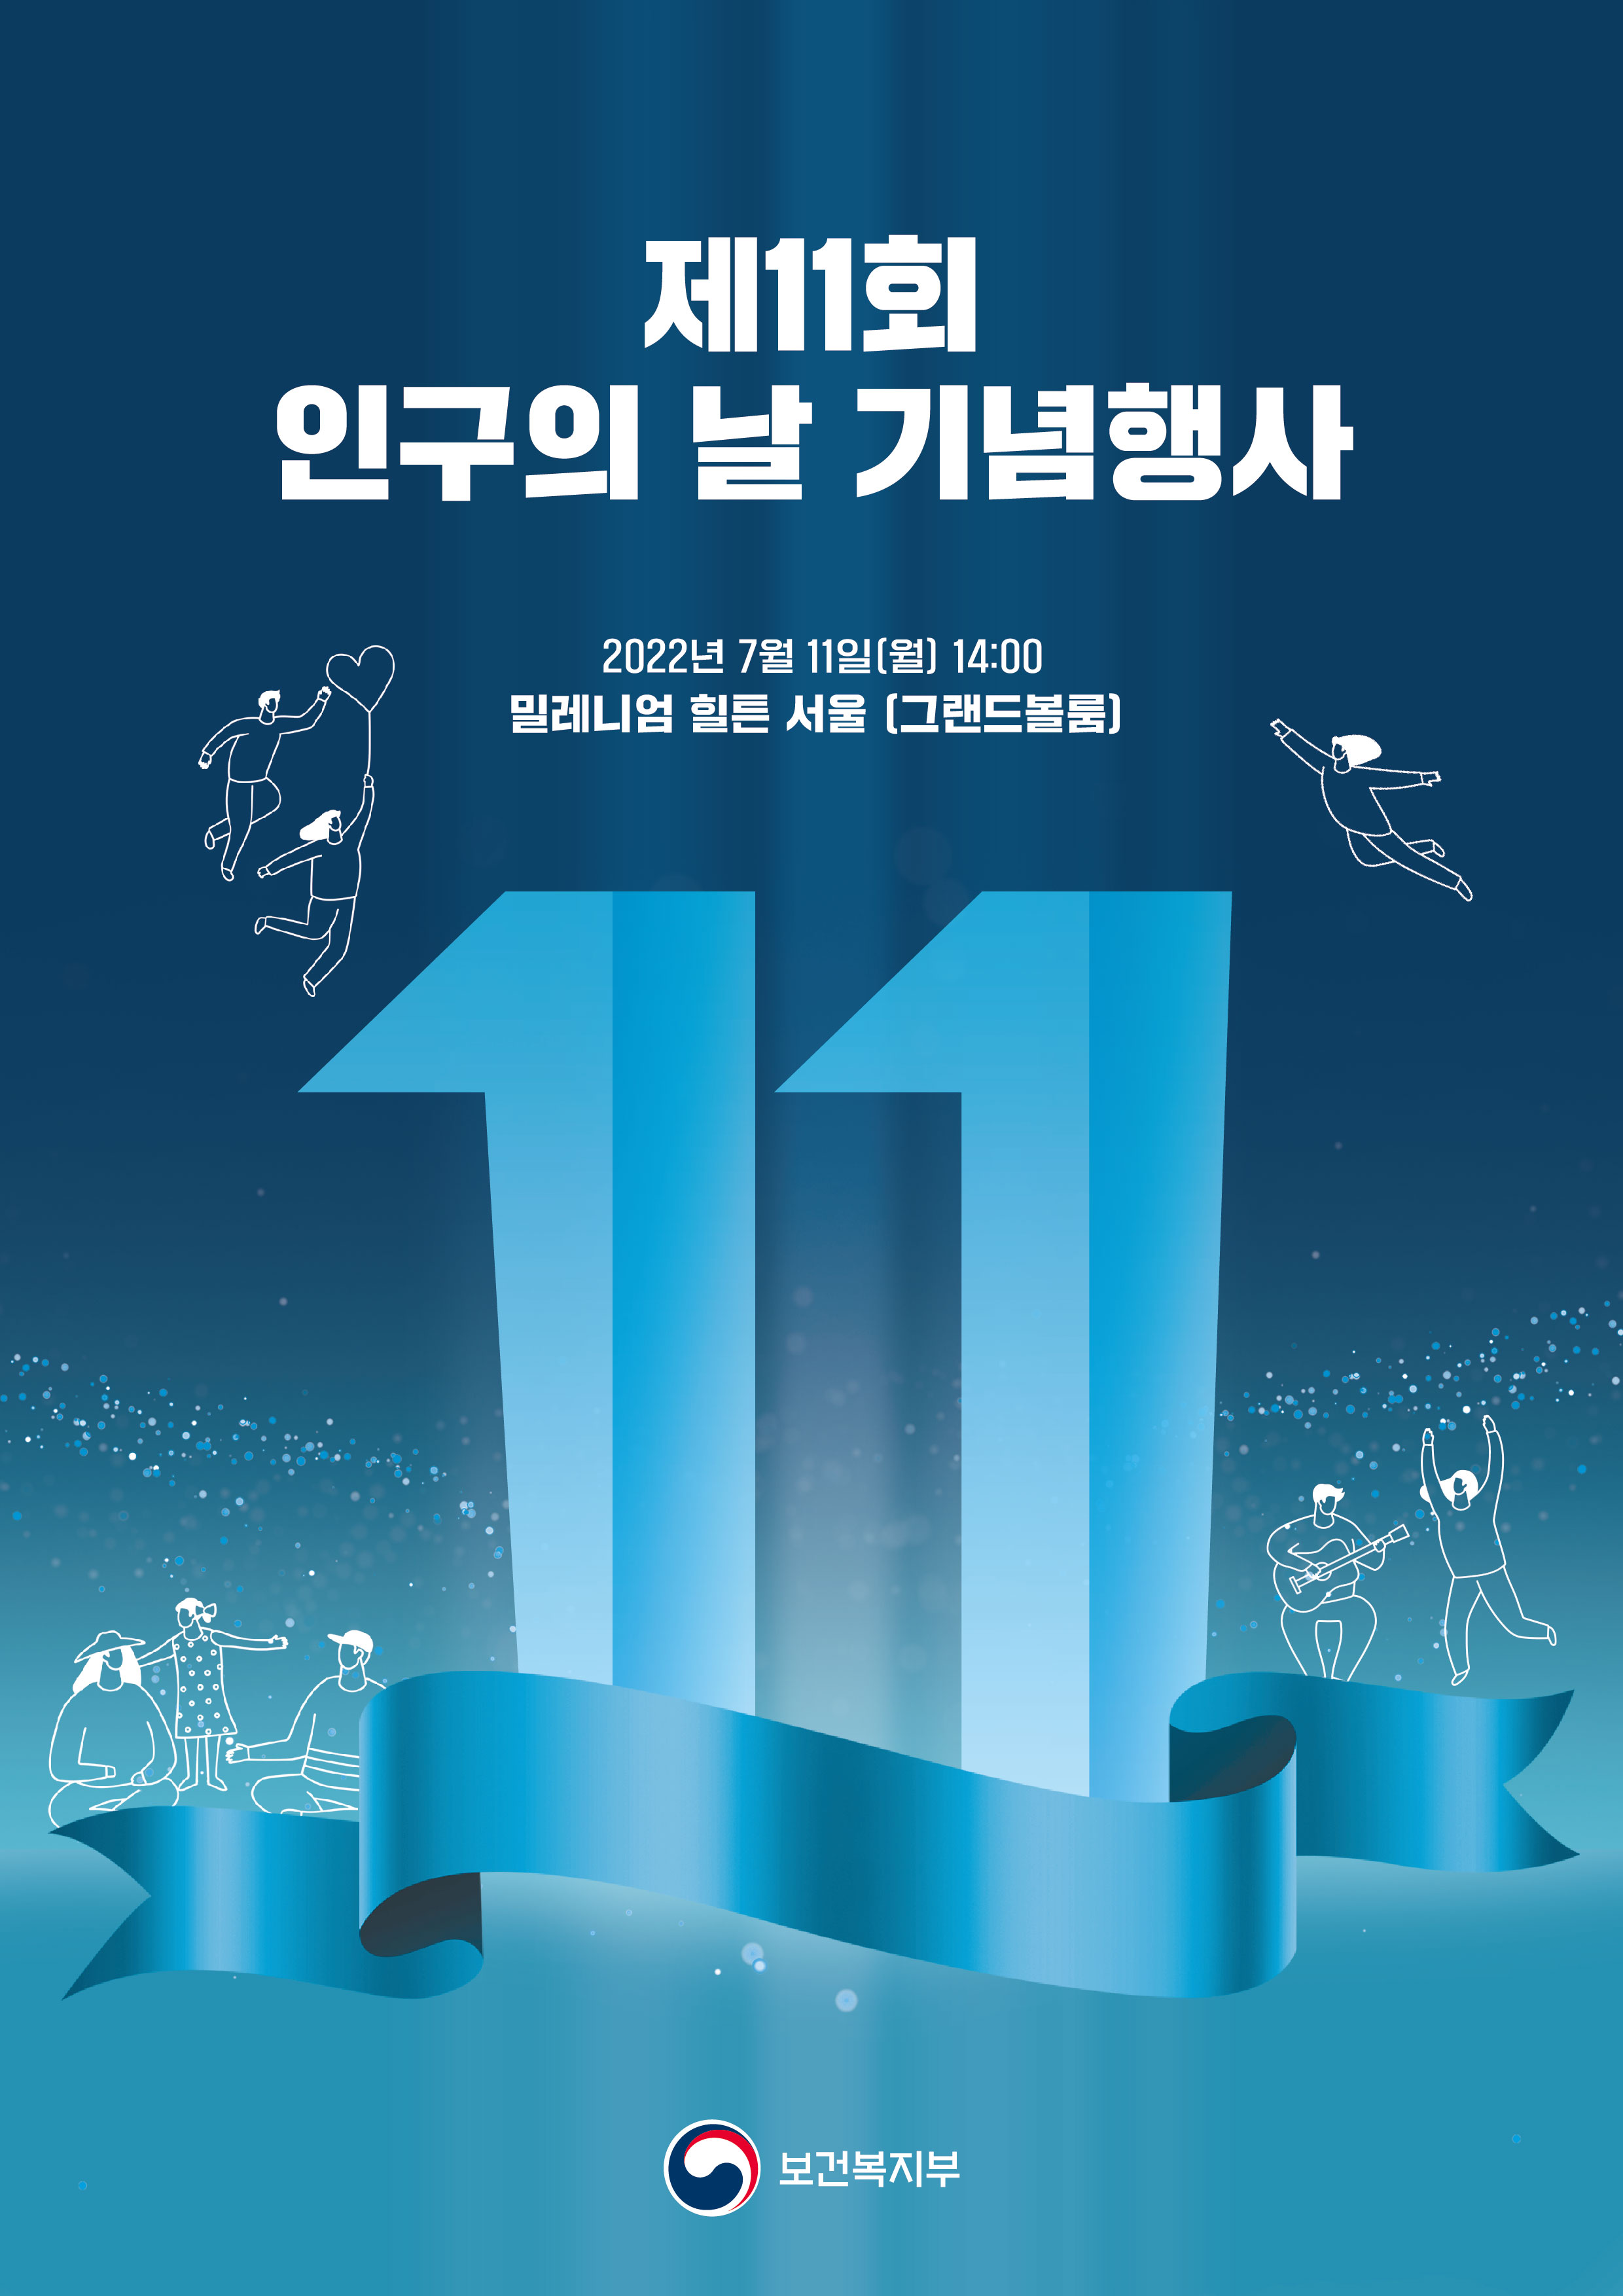 제11회 인구의 날 기념행사 2022년 7월 11일(월)14:00 밀레니엄 힐튼 서울(그랜드볼룸)-보건복지부